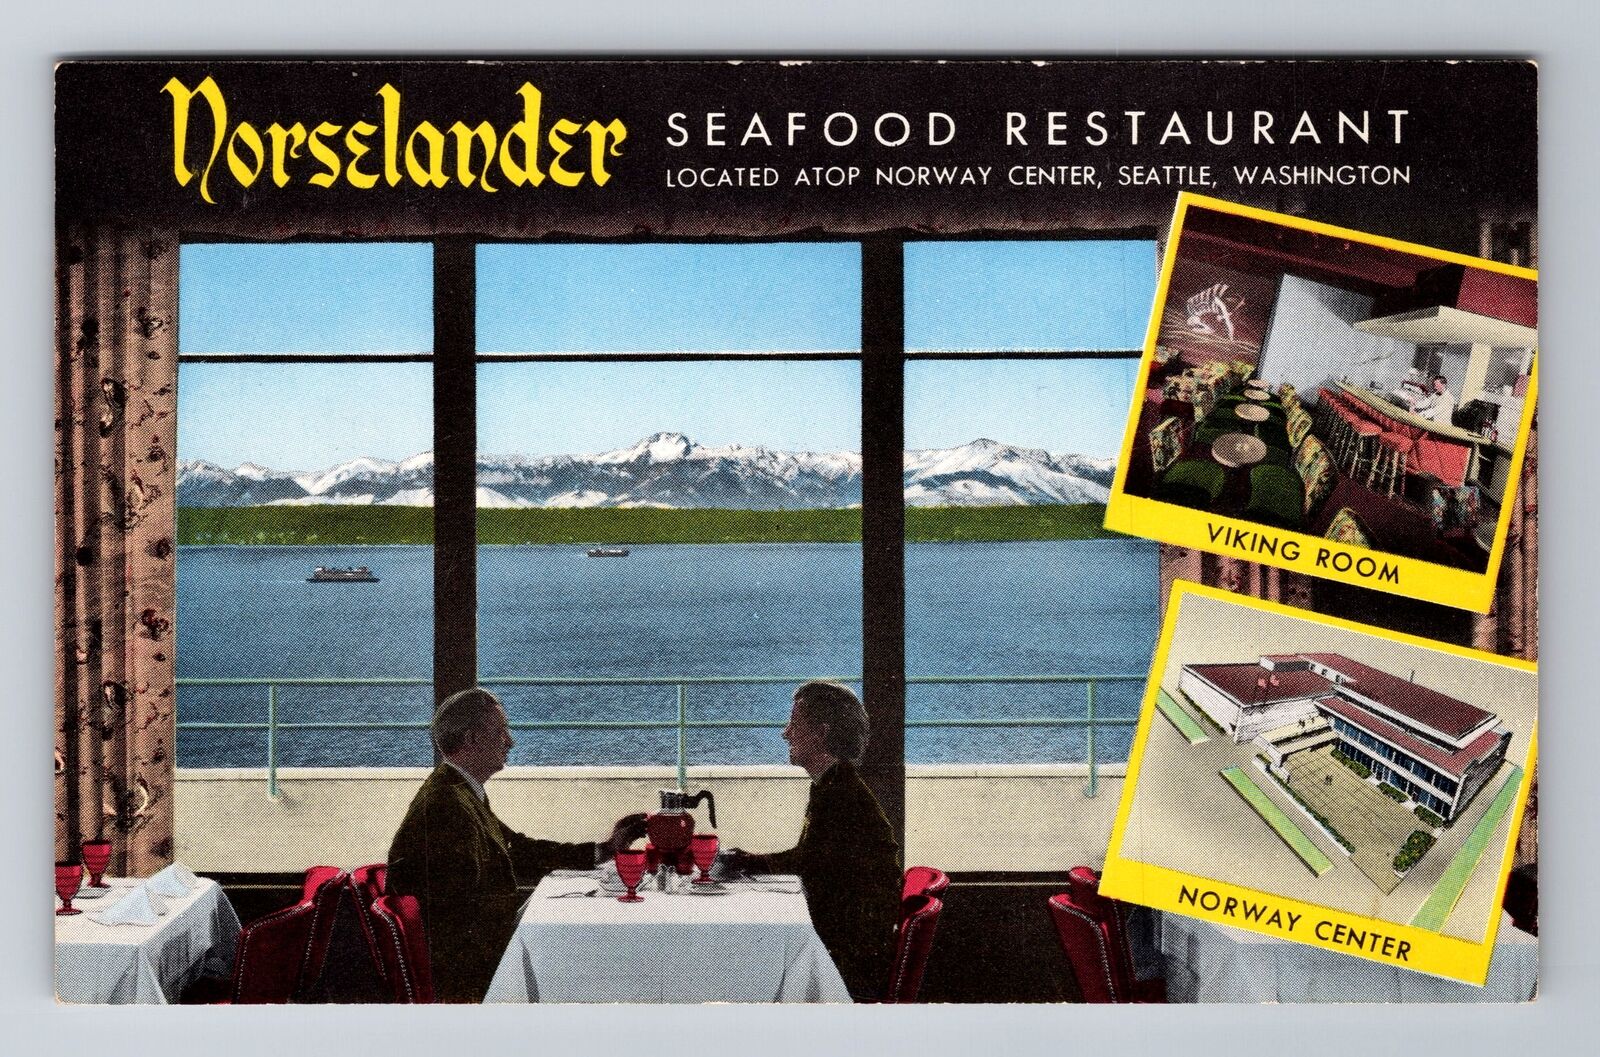 Seattle WA-Washington Norselander Seafood Rest. Advertising Vintage Postcard